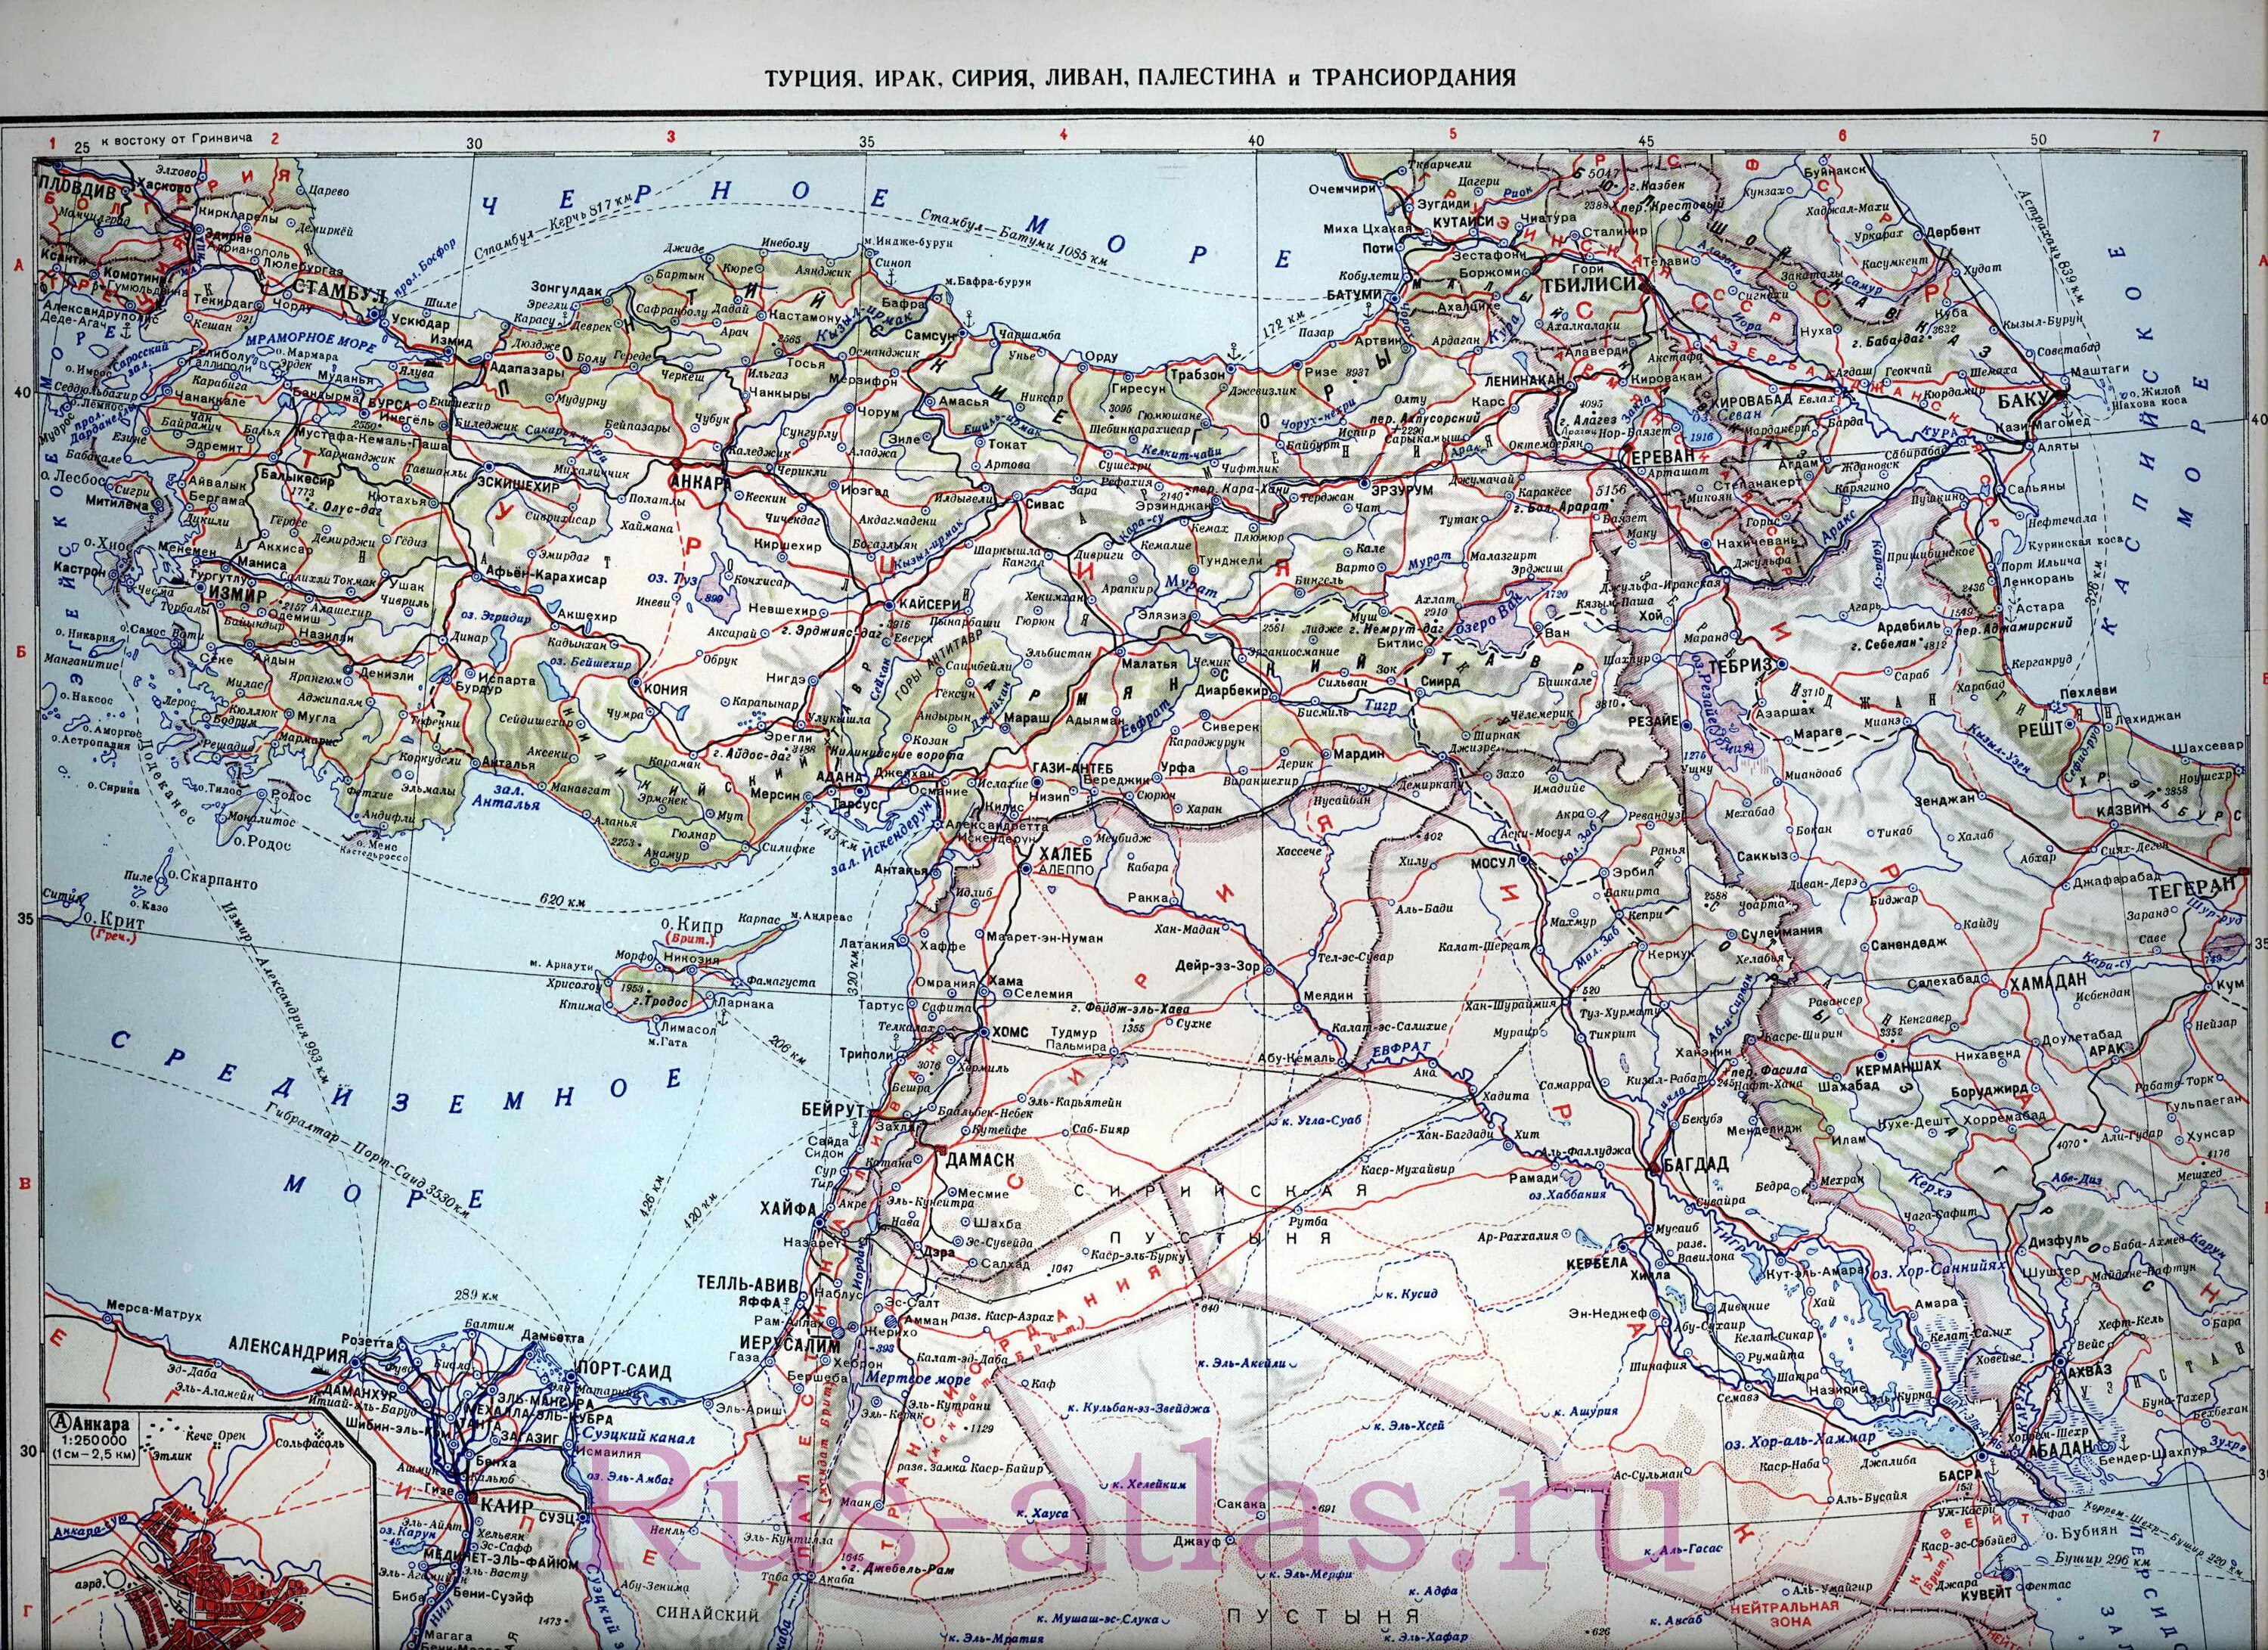 Подробная карта востока. Восток Турции на карте. Карта Турция Сирия Ирак. Турция и Сирия на карте. Карта Турции и Сирии на русском языке с городами.